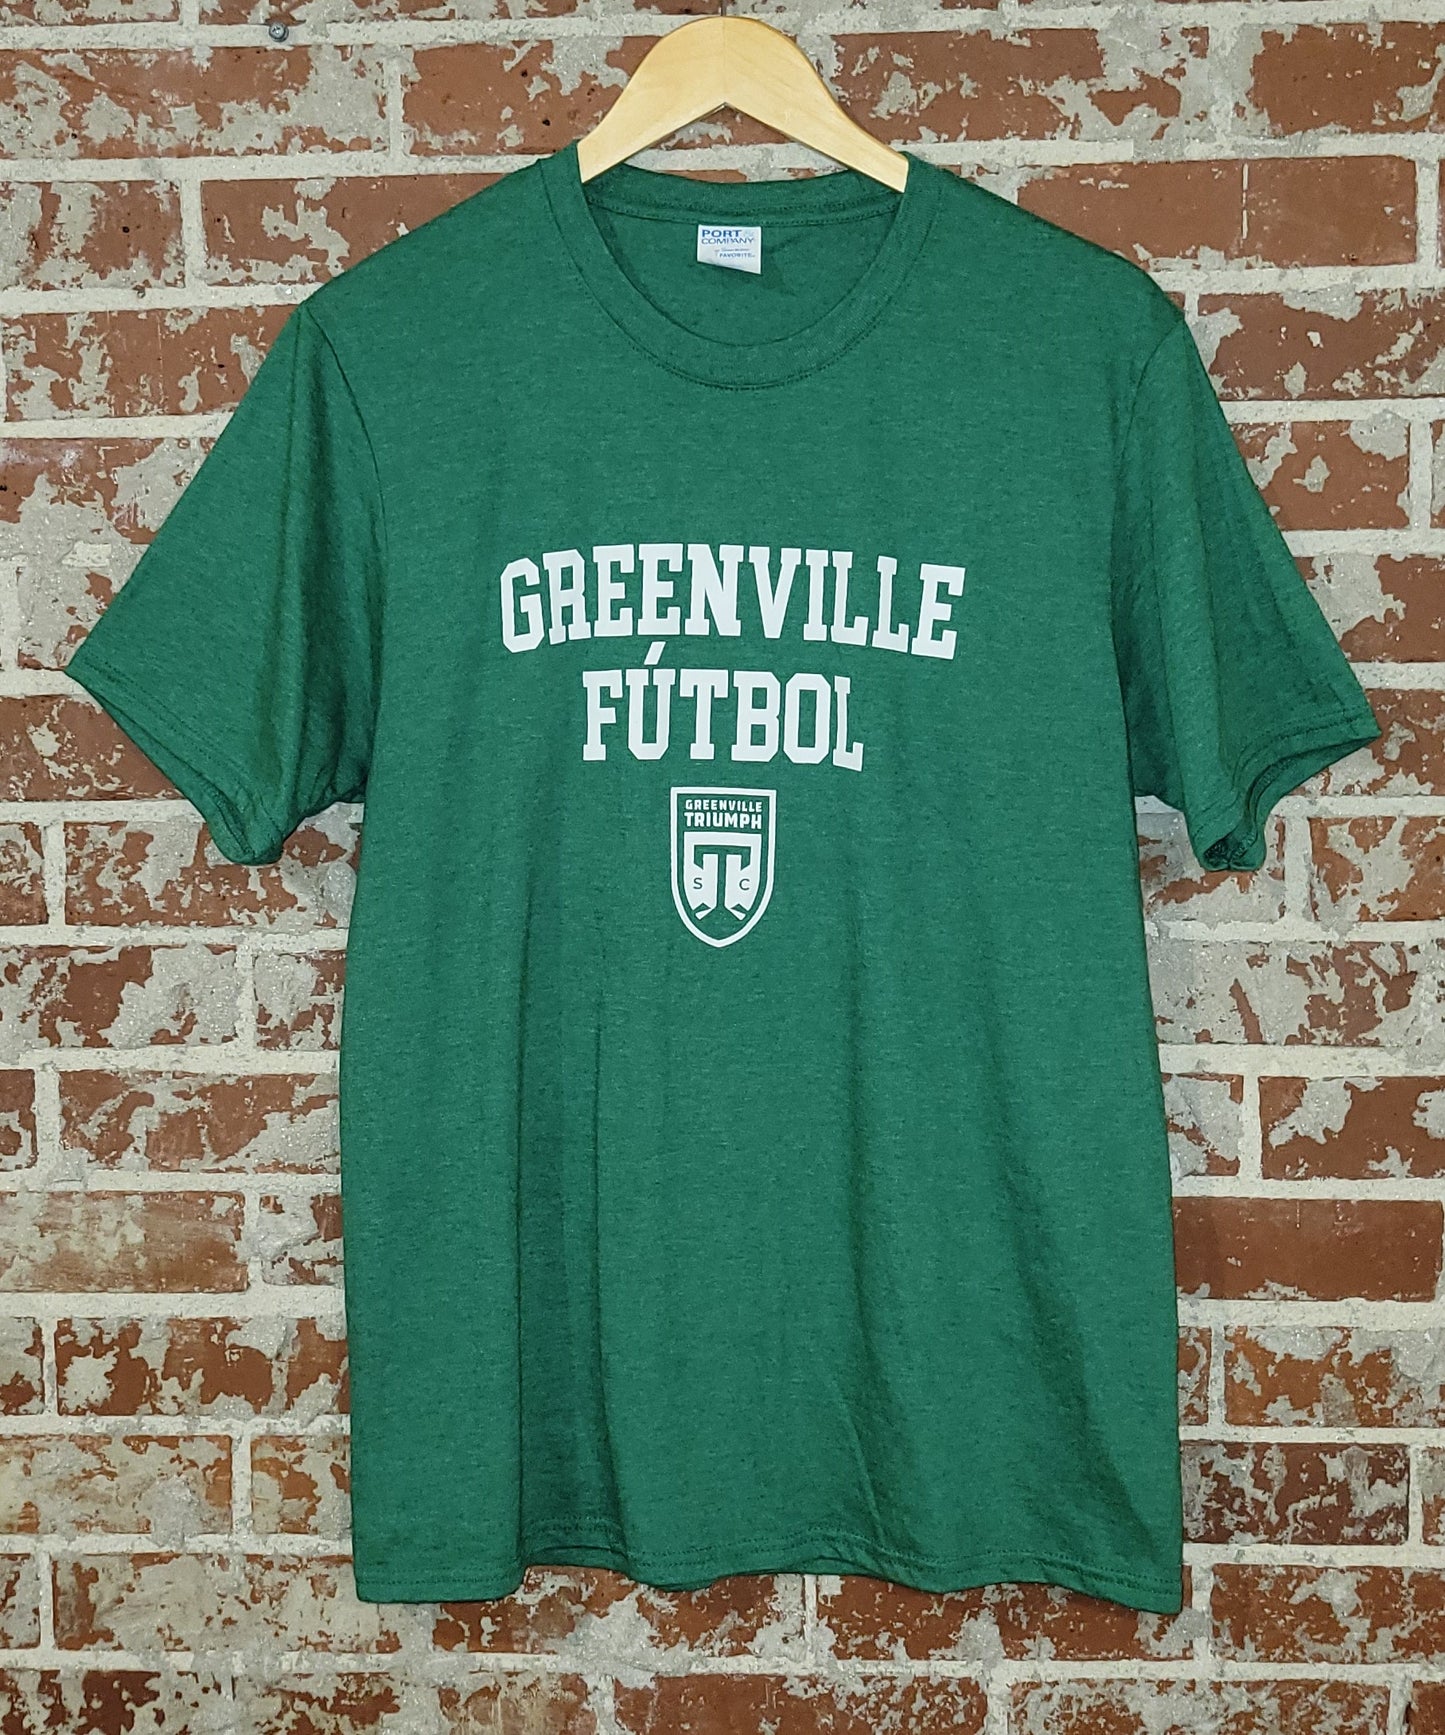 Greenville Futbol Tee, Green